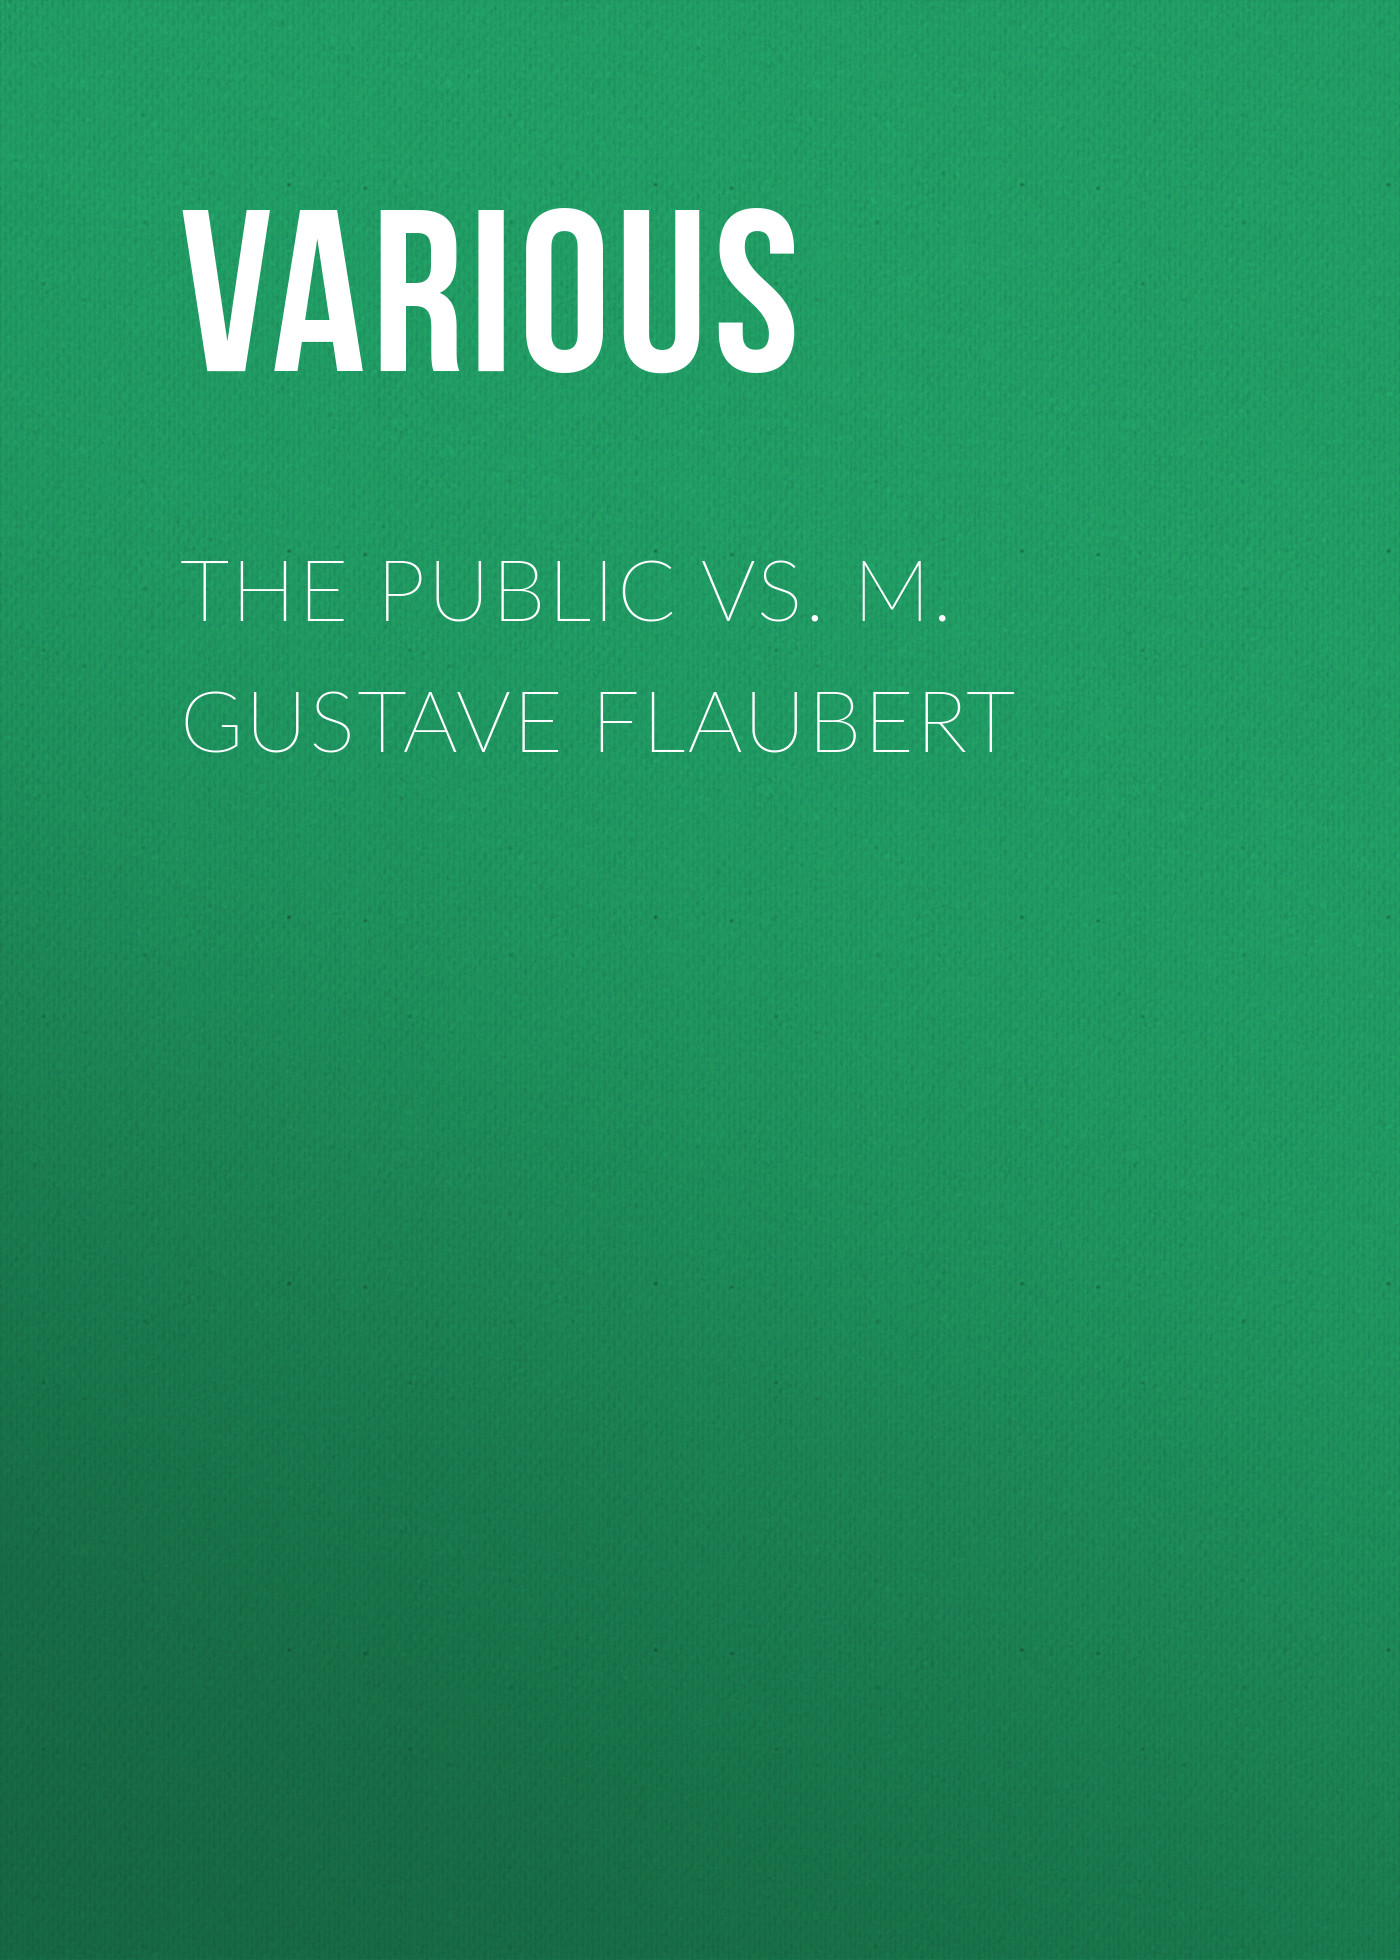 Книга The Public vs. M. Gustave Flaubert из серии , созданная  Various, может относится к жанру Зарубежная старинная литература, Журналы, Зарубежная образовательная литература. Стоимость электронной книги The Public vs. M. Gustave Flaubert с идентификатором 35506779 составляет 0 руб.